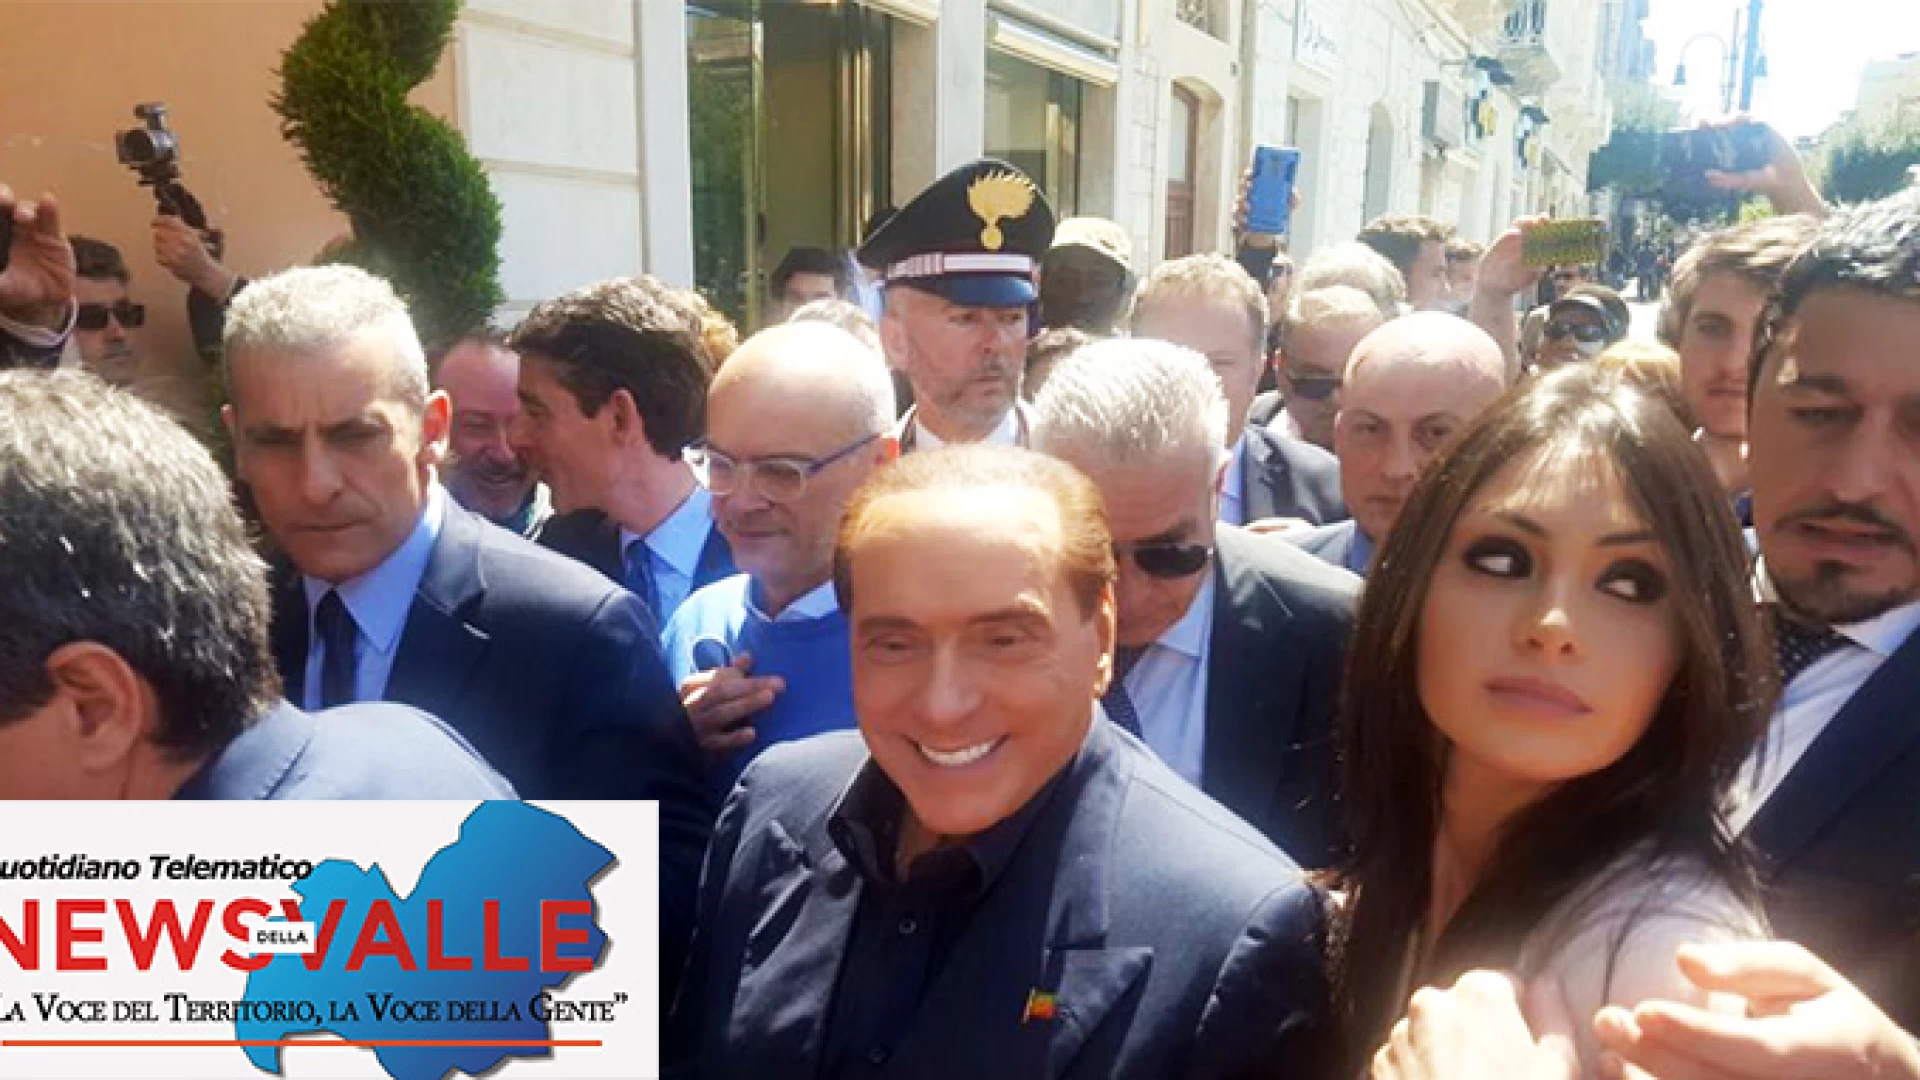 Regionali 2018: confermato l’appuntamento con Berlusconi a Campobasso. Chiuderà la campagna elettorale con Toma.